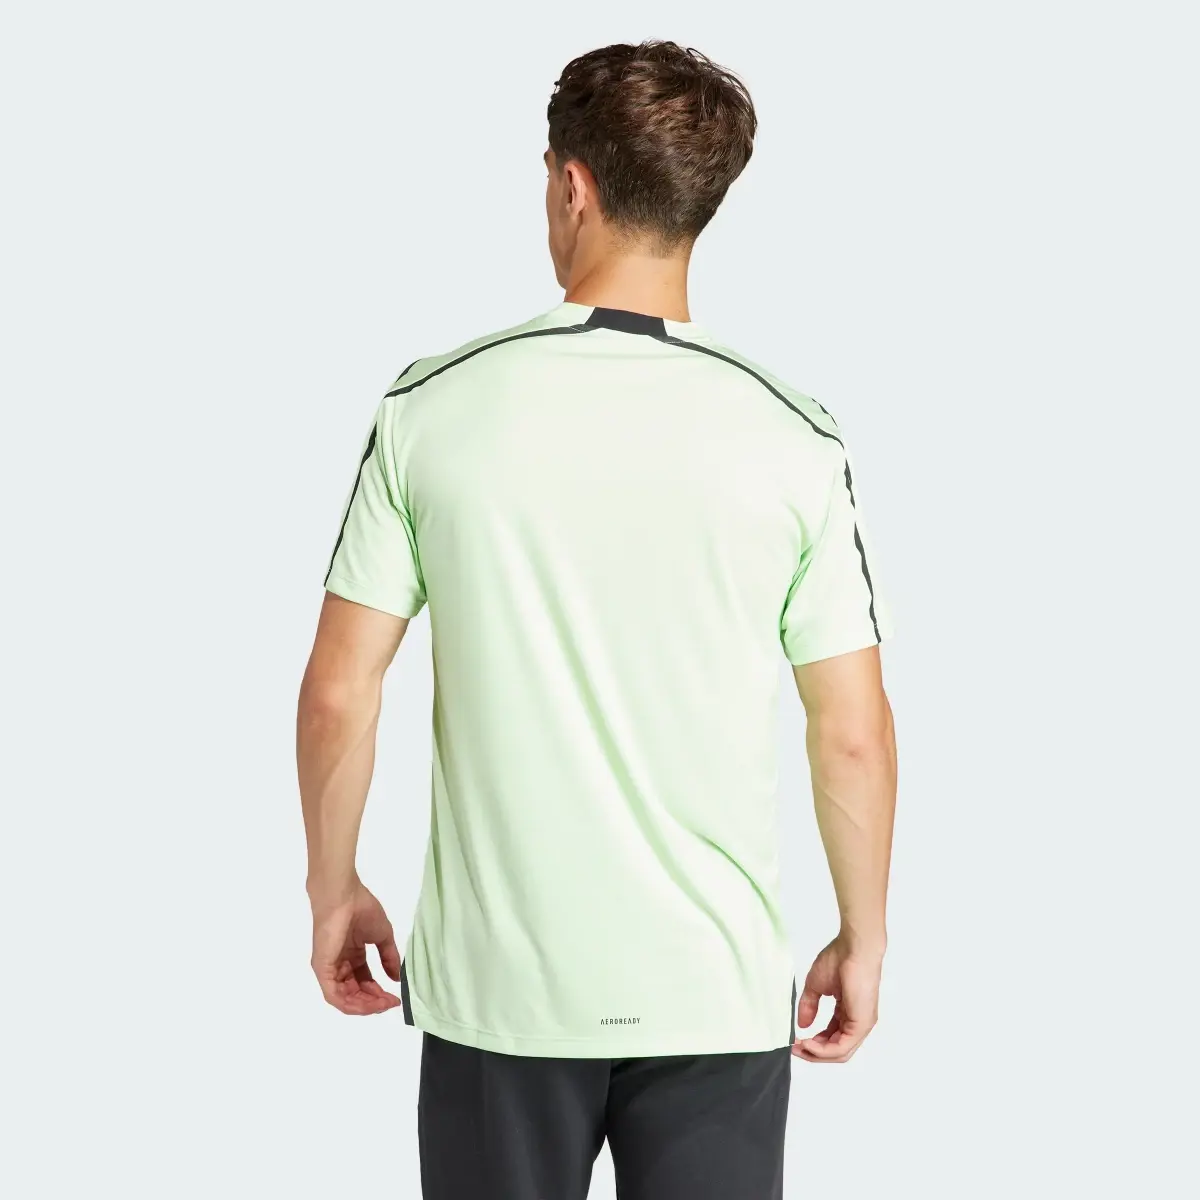 Adidas Camiseta Designed for Training Adistrong Workout. 3